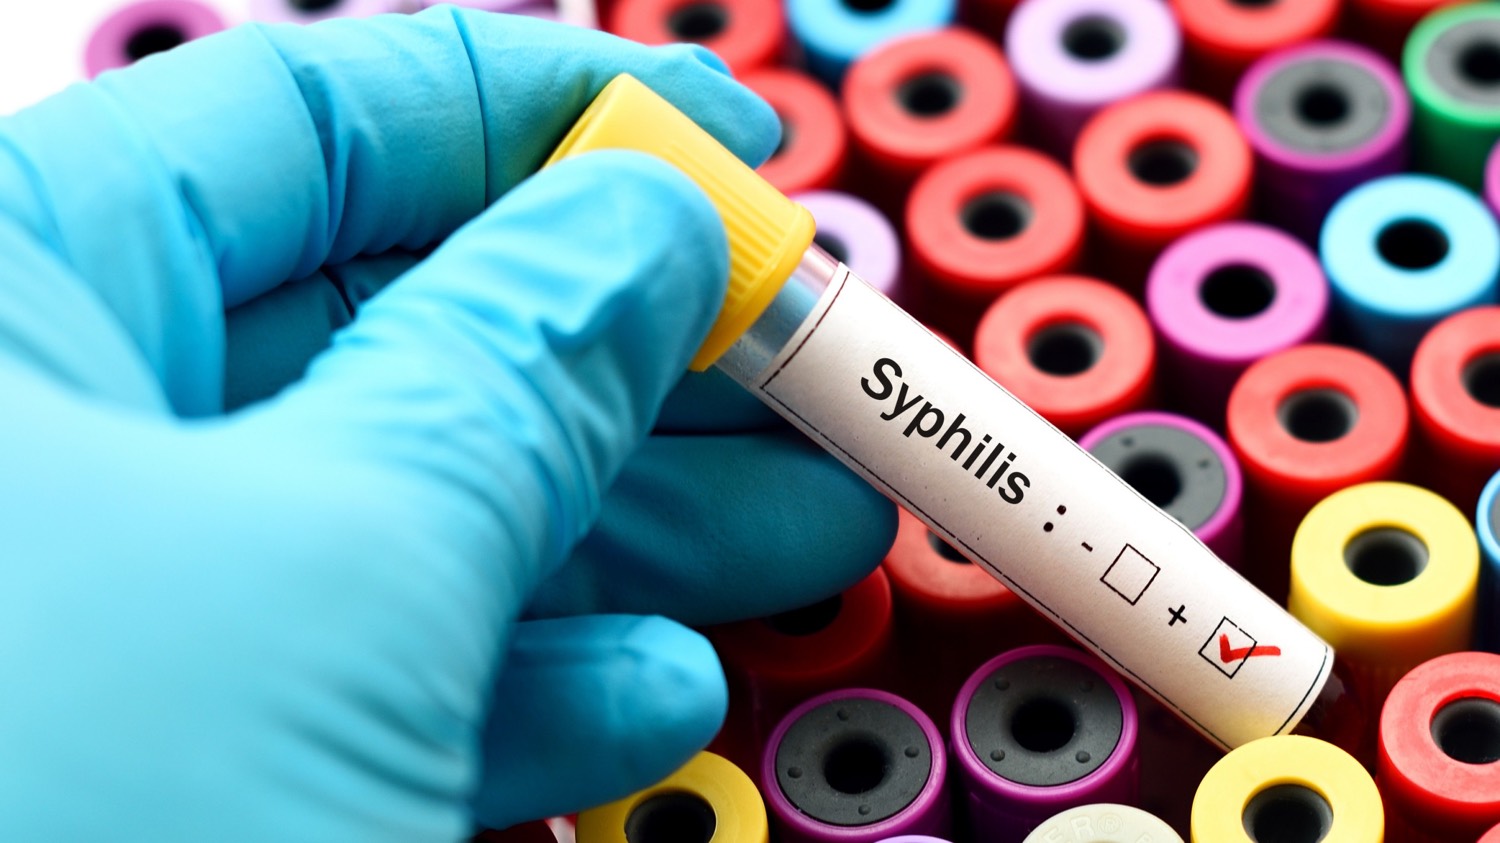 cas de syphilis en Europe recrudescence